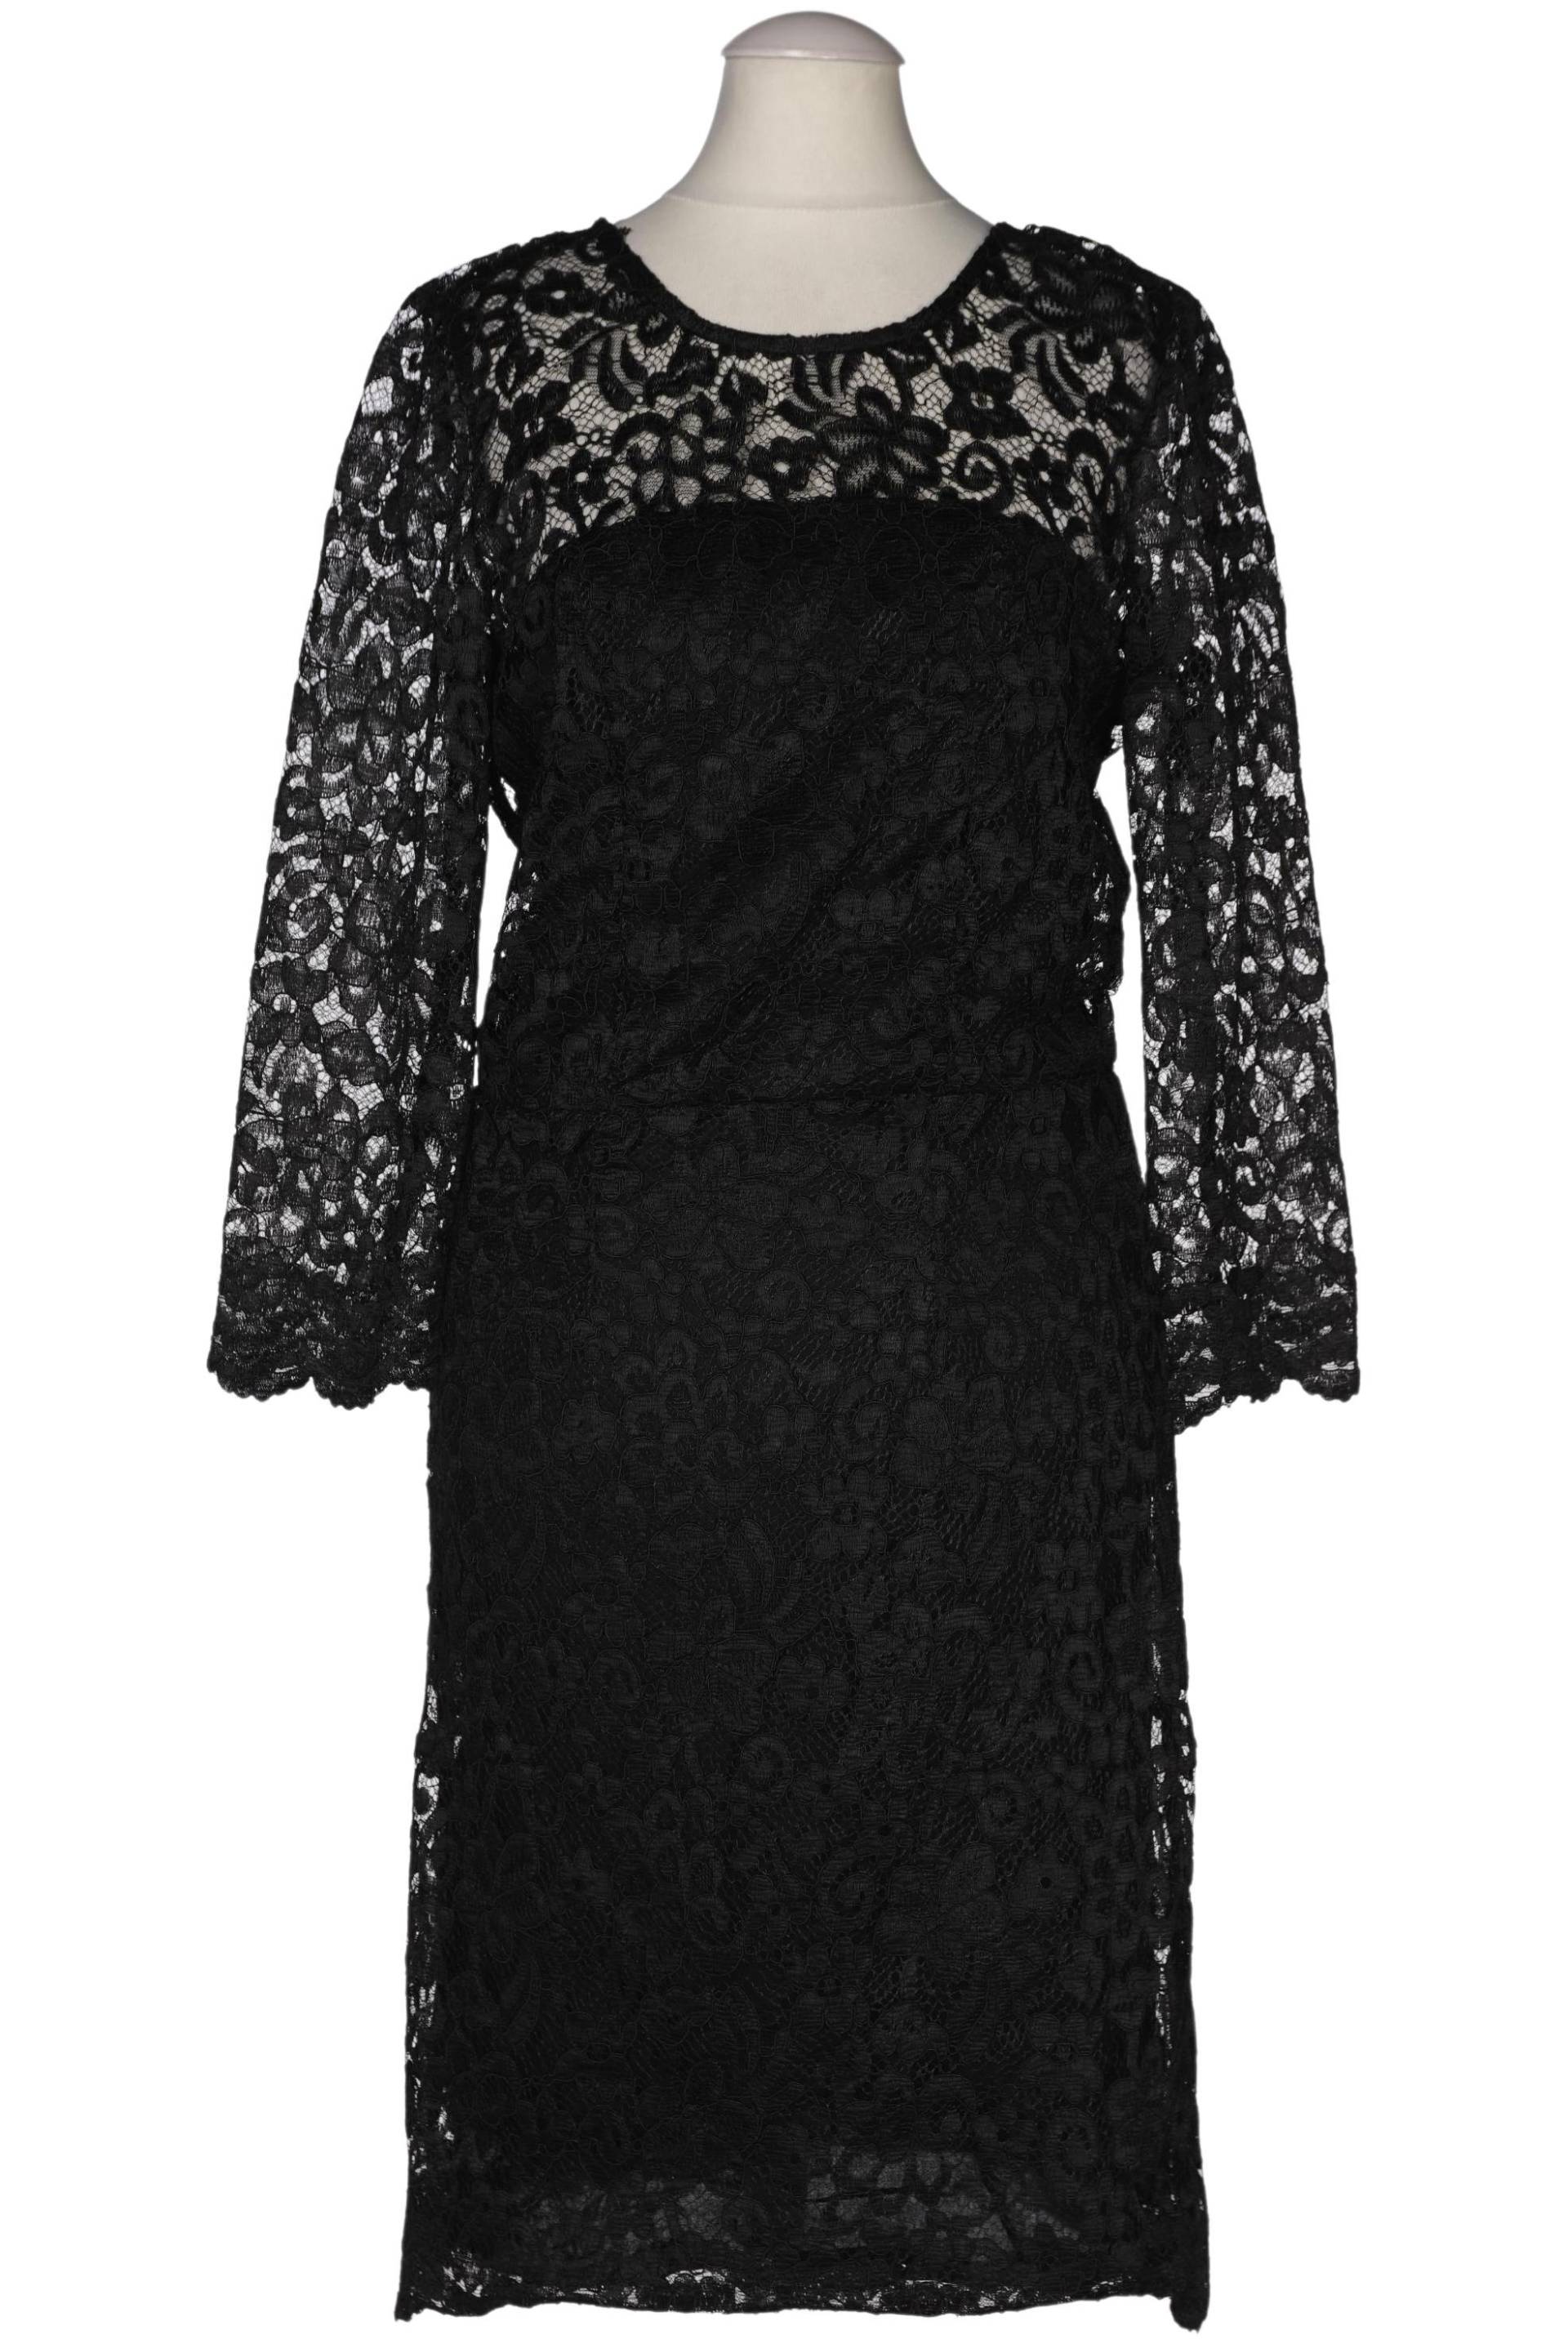 Burton Damen Kleid, schwarz, Gr. 36 von Burton